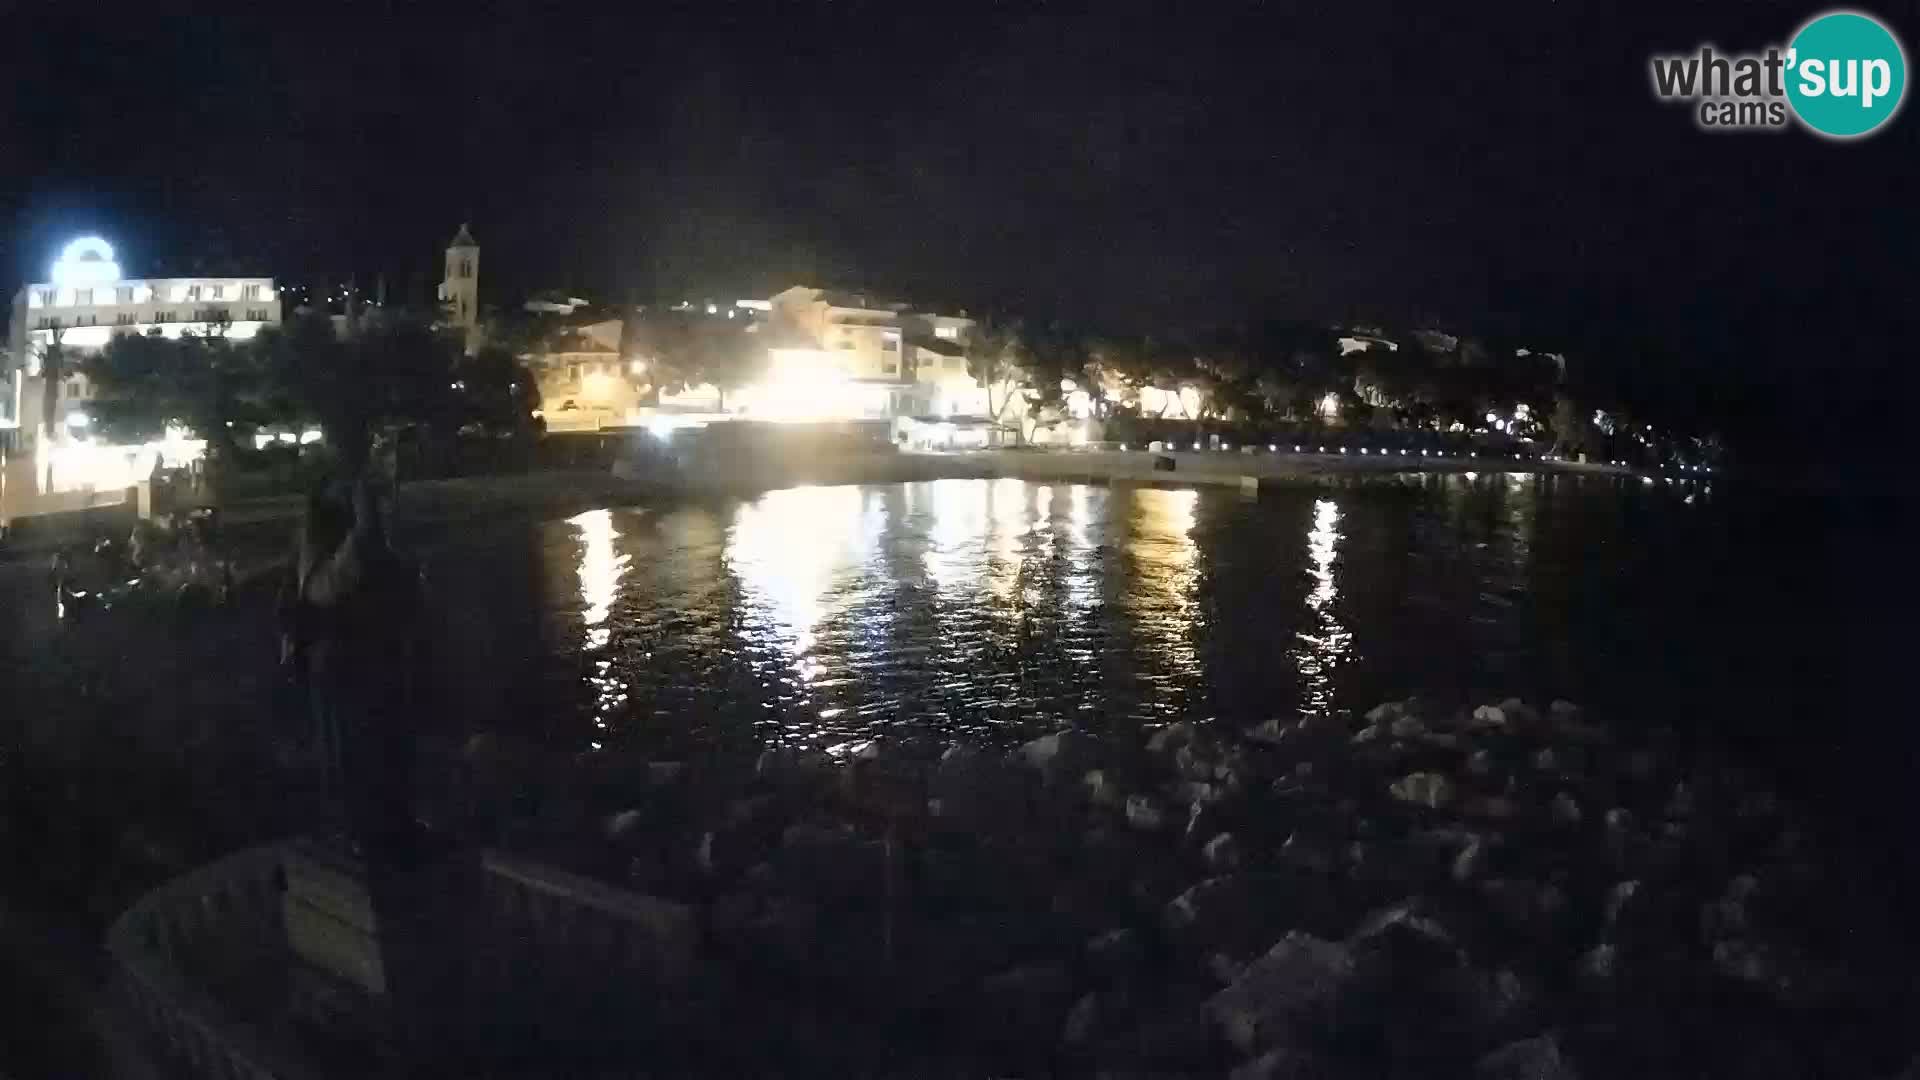 Web kamera Baška Voda – Sv. Nikola i plaža